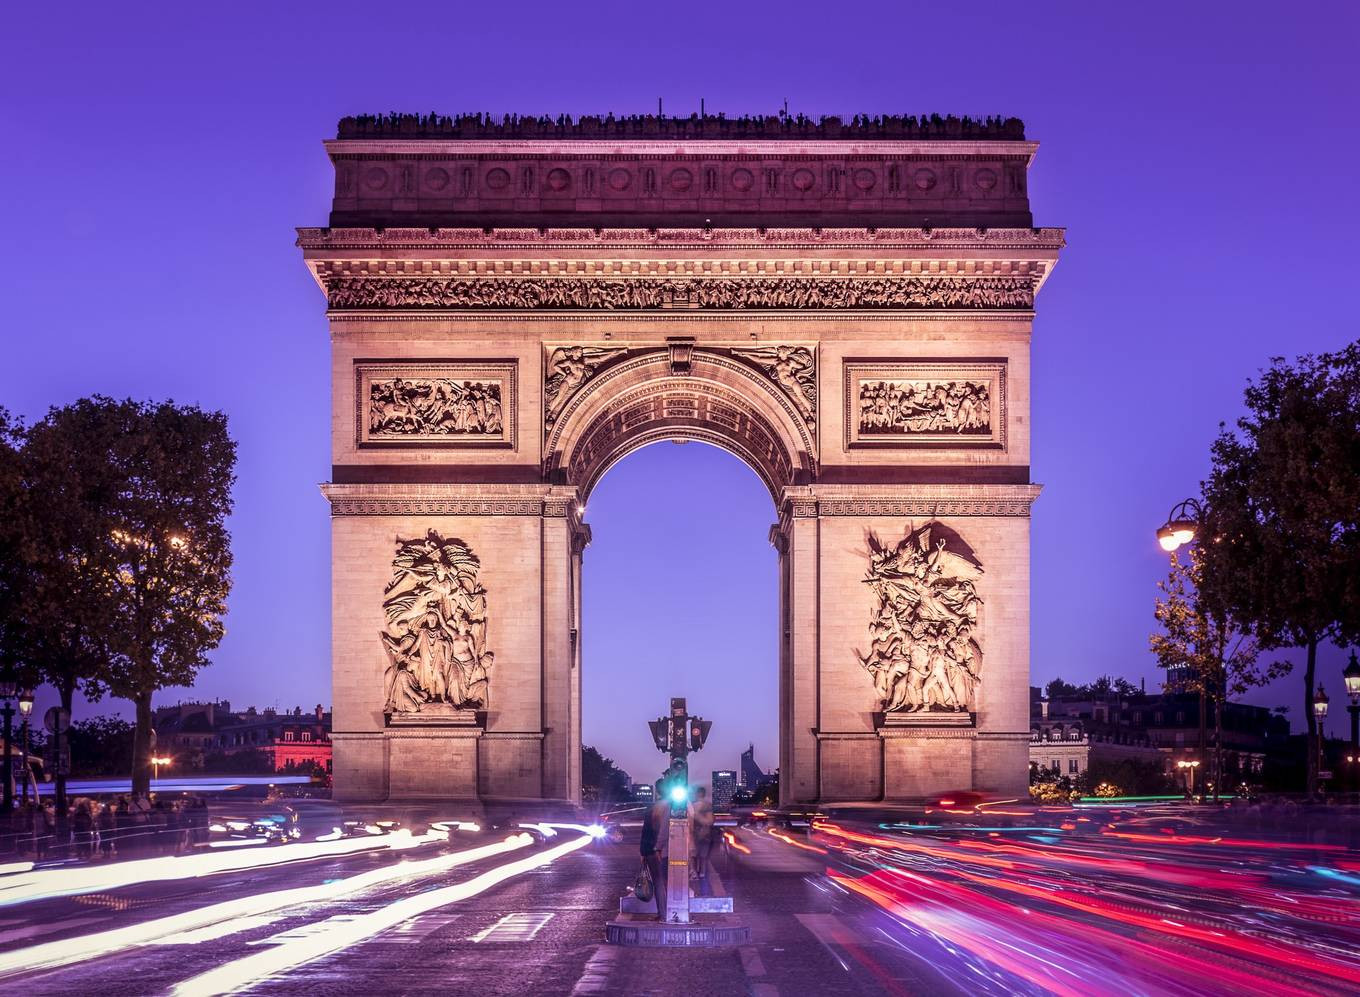 Khải Hoàn Môn là một trong những công trình lịch sử nổi tiếng nhất nước Pháp. Nằm giữa quảng trường Étoile, vị trí của Khải Hoàn Môn là điểm cuối của đại lộ Champs-Elyseés. Đây cũng là điểm tập trung đông khách du lịch của thành phố. Ảnh: Grandearche.